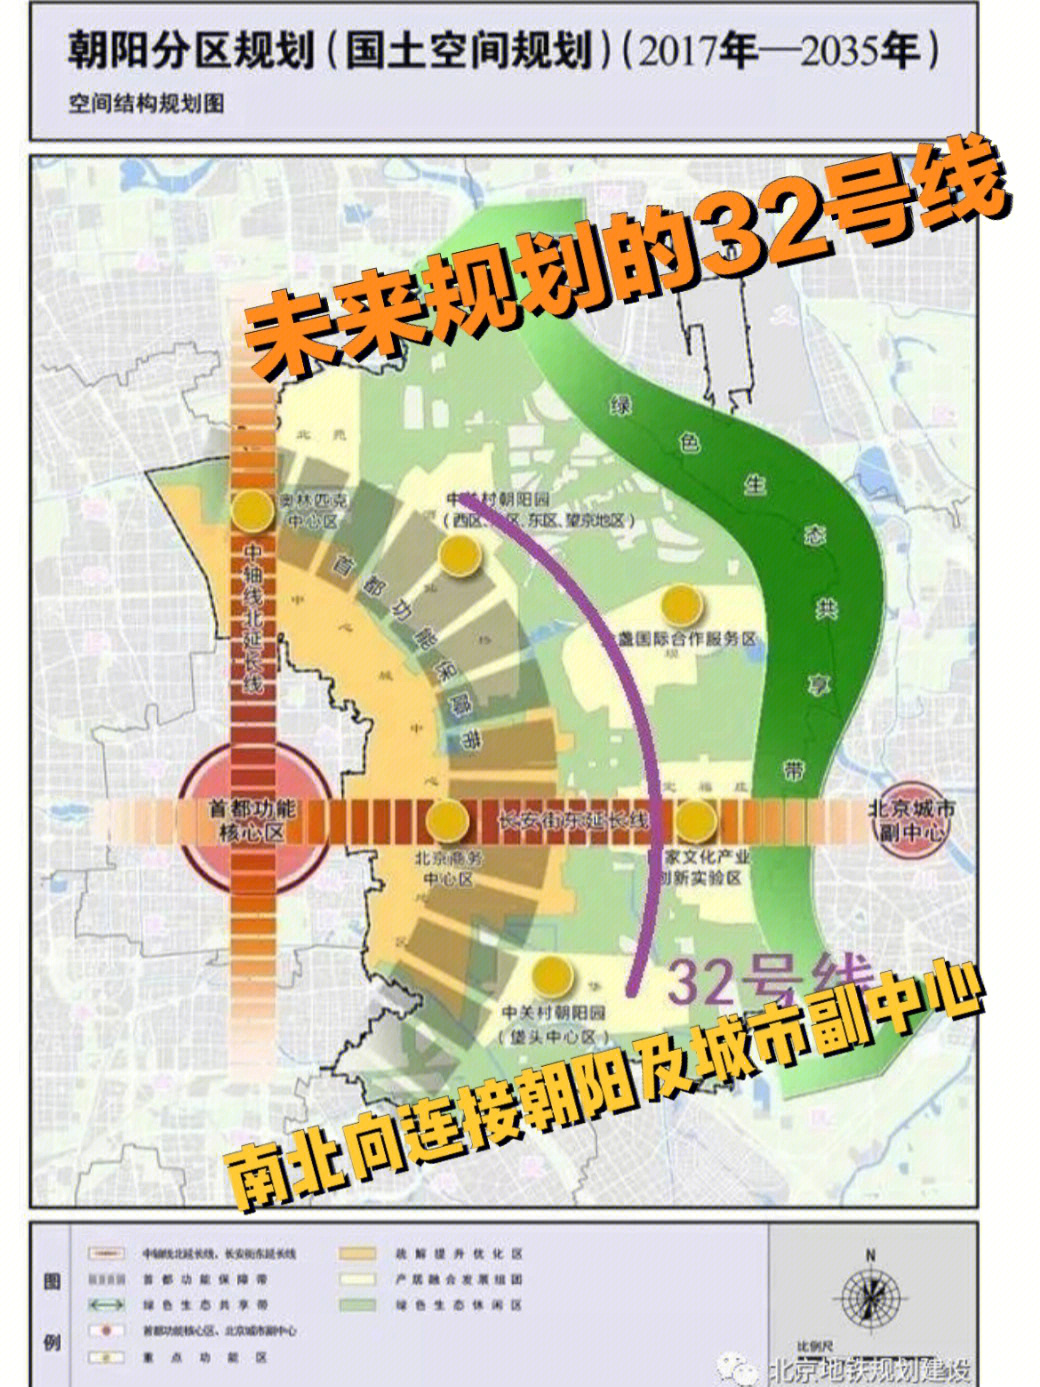 绿城崔各庄新作交通便利未来规划地铁32